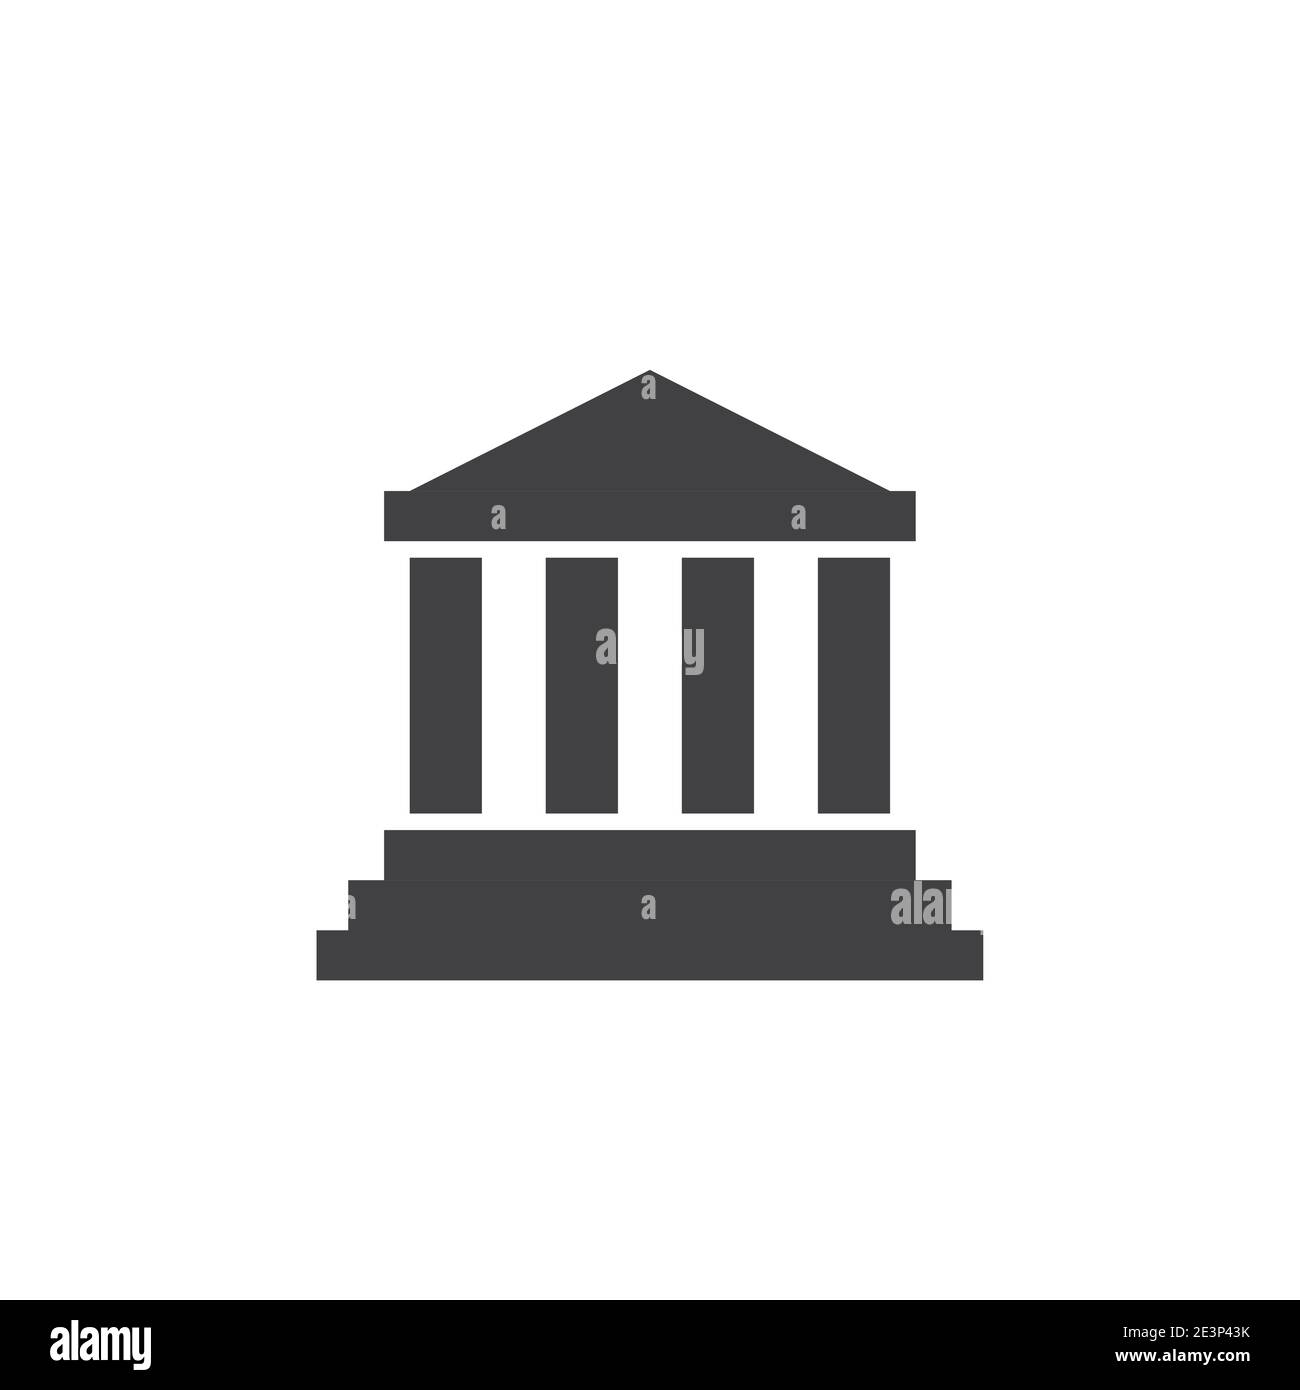 Logo vectoriel de l'icône Bank institute. Palais de justice faillite bâtiment de musée Illustration de Vecteur